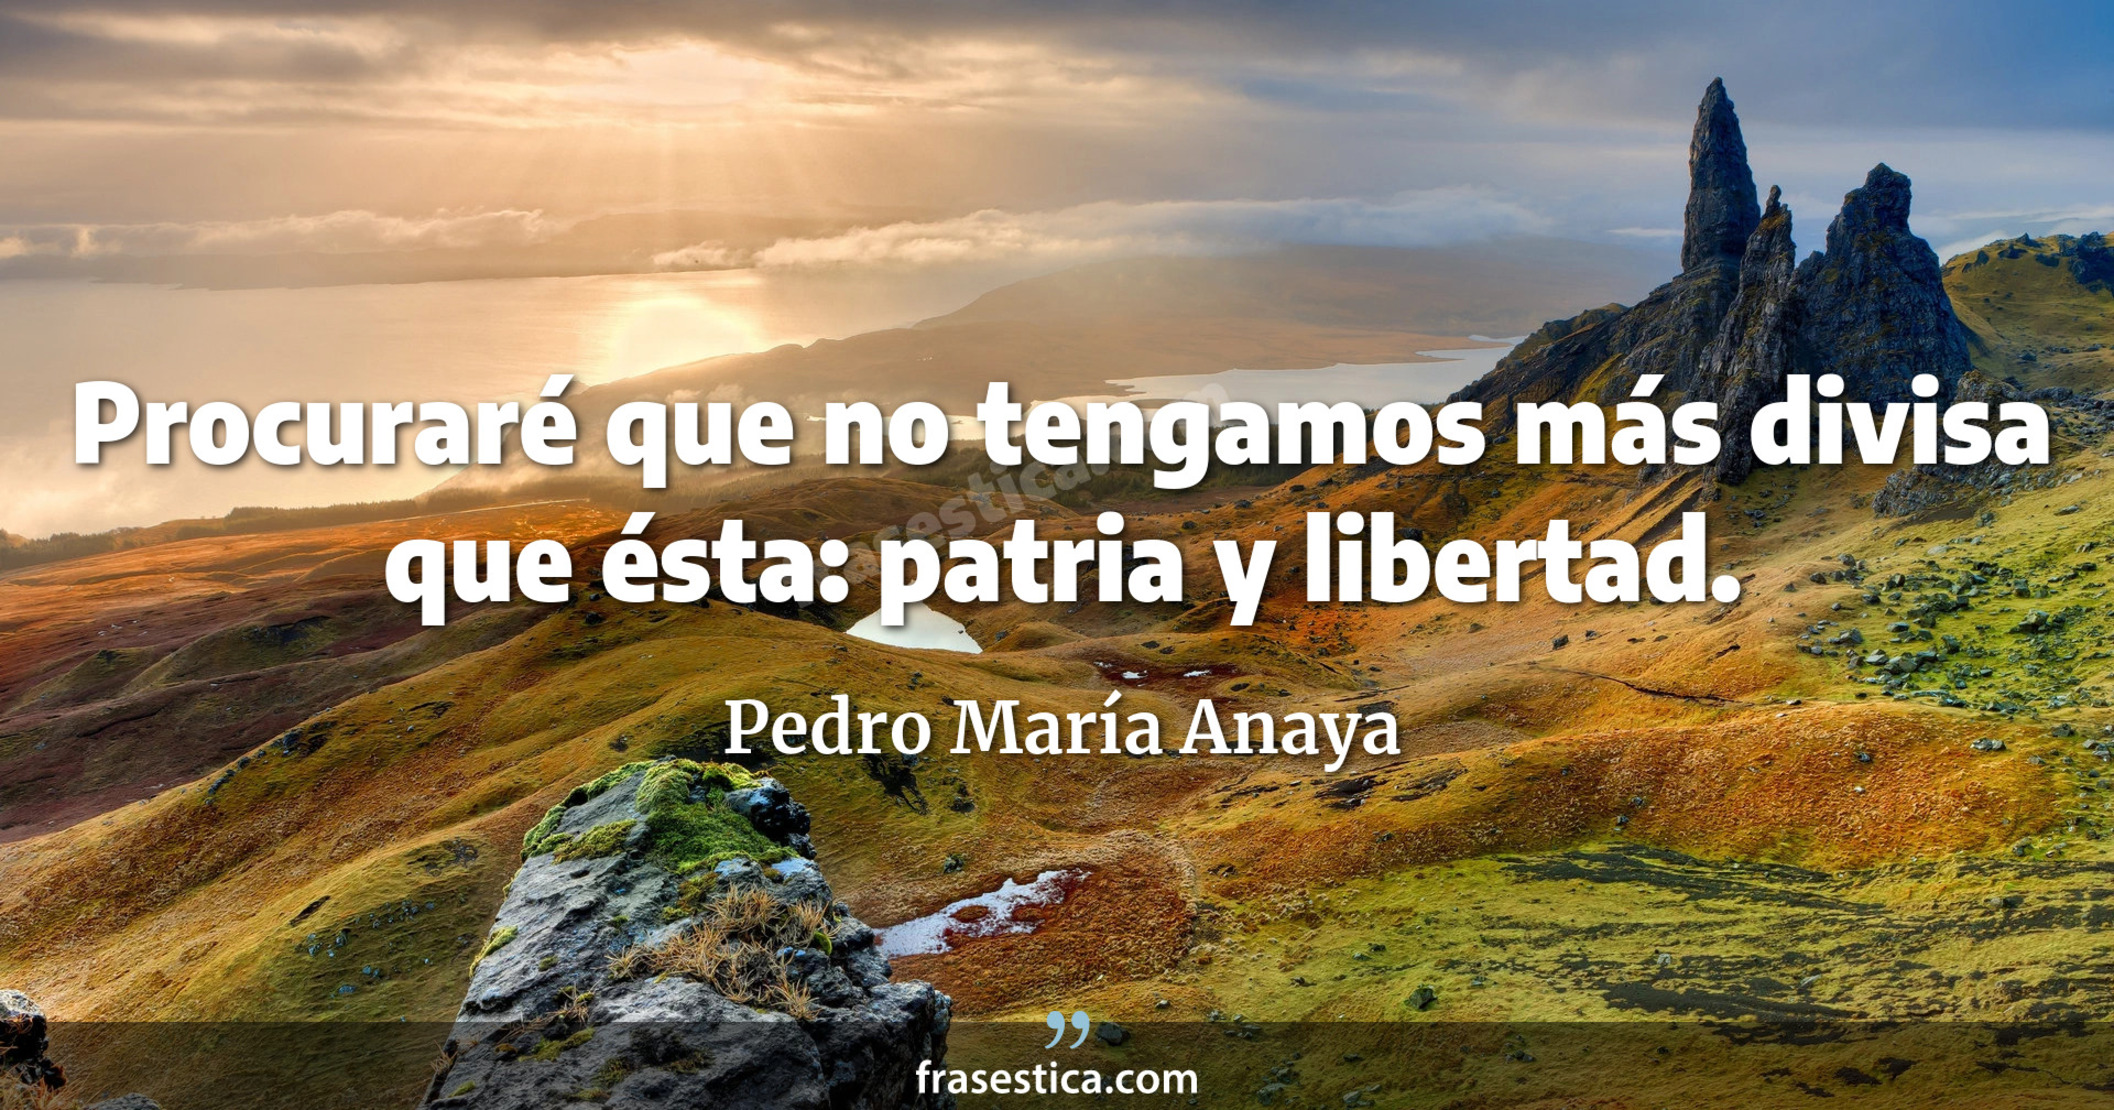 Procuraré que no tengamos más divisa que ésta: patria y libertad. - Pedro María Anaya